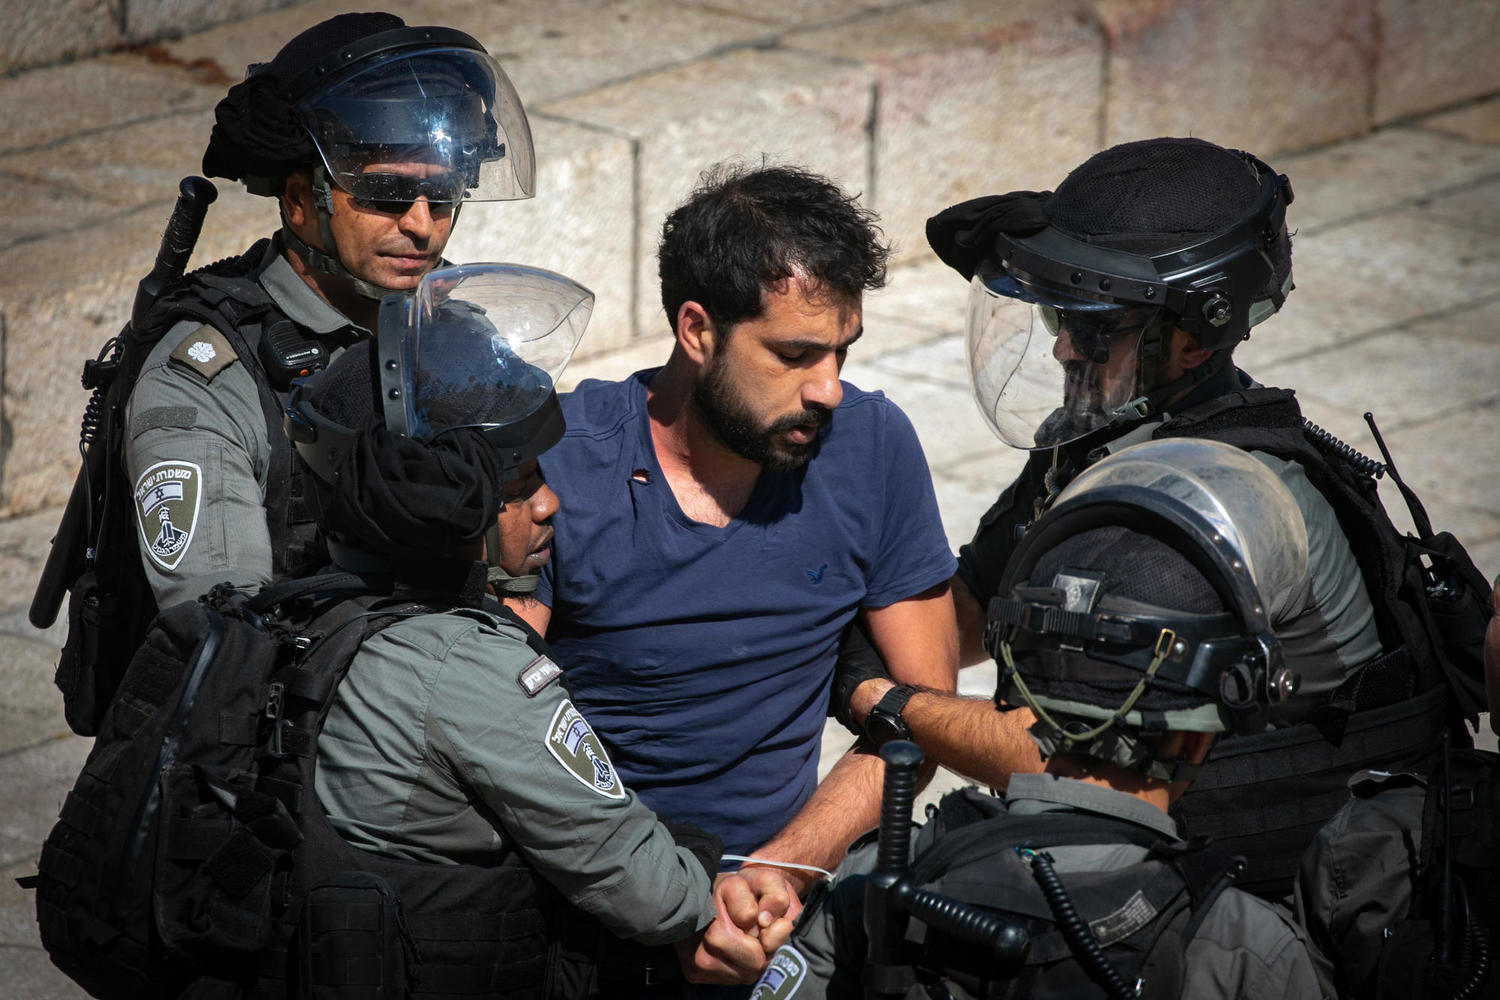 иллюстрация: арест участника арабских беспорядков